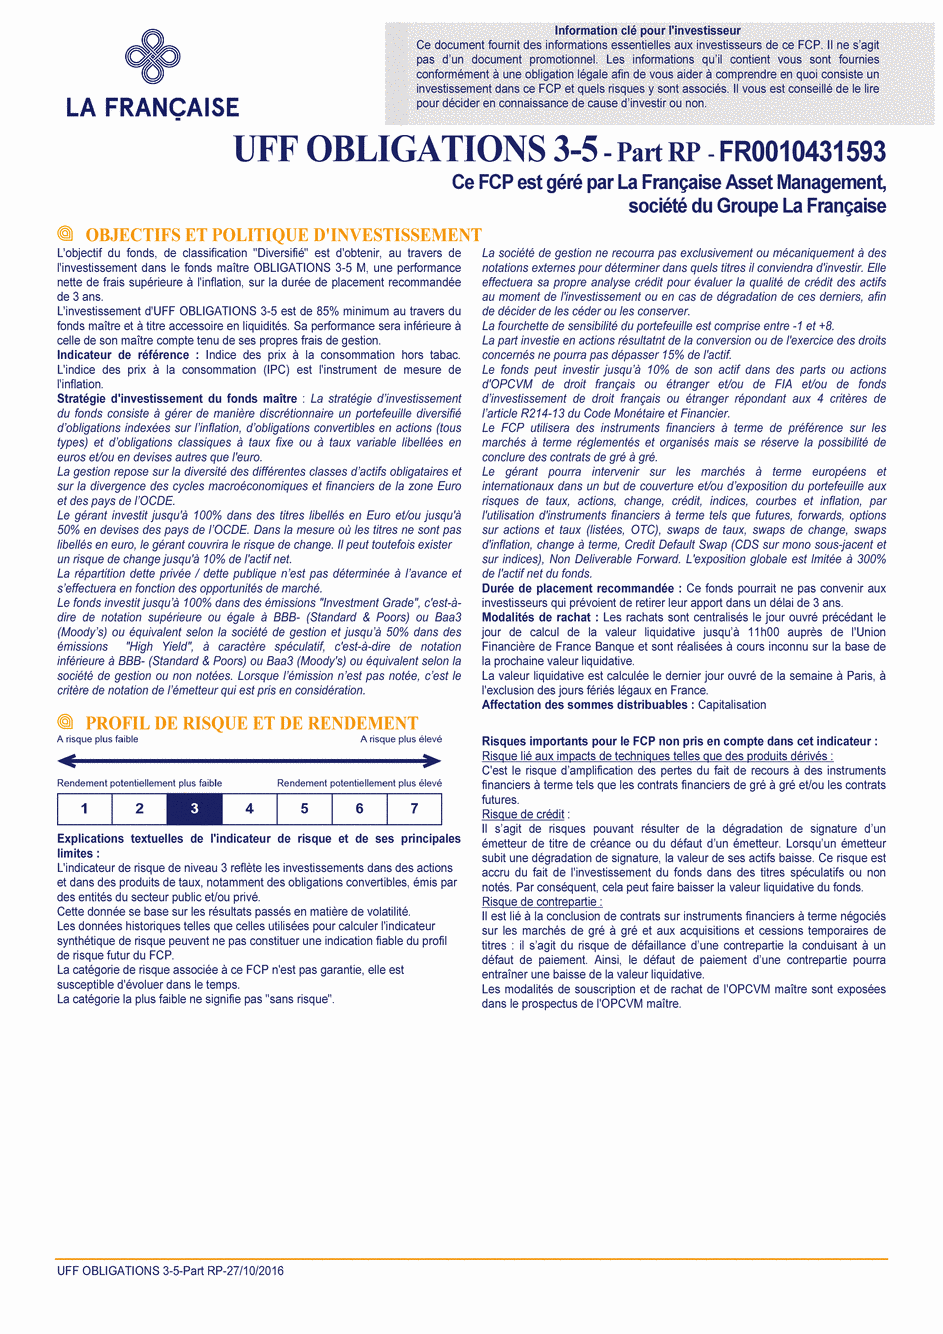 DICI UFF Obligations 3-5 (Part RP) - 27/10/2016 - Français